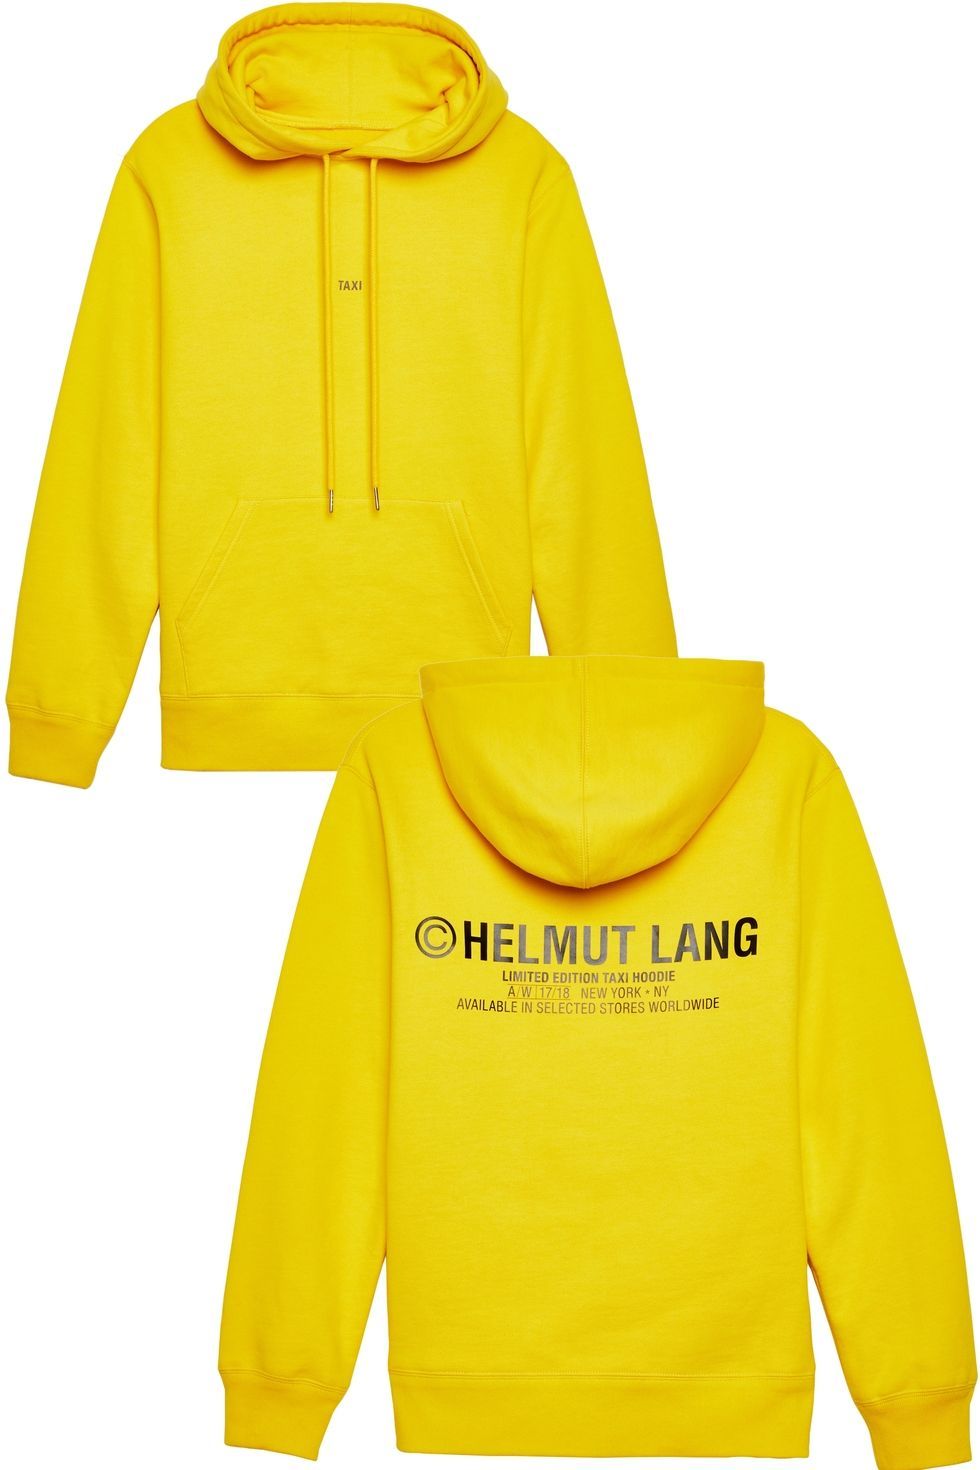 Hood, Clothing, Yellow, Outerwear, Hoodie, Sweatshirt, Sleeve, Raincoat, Font, Jacket, 